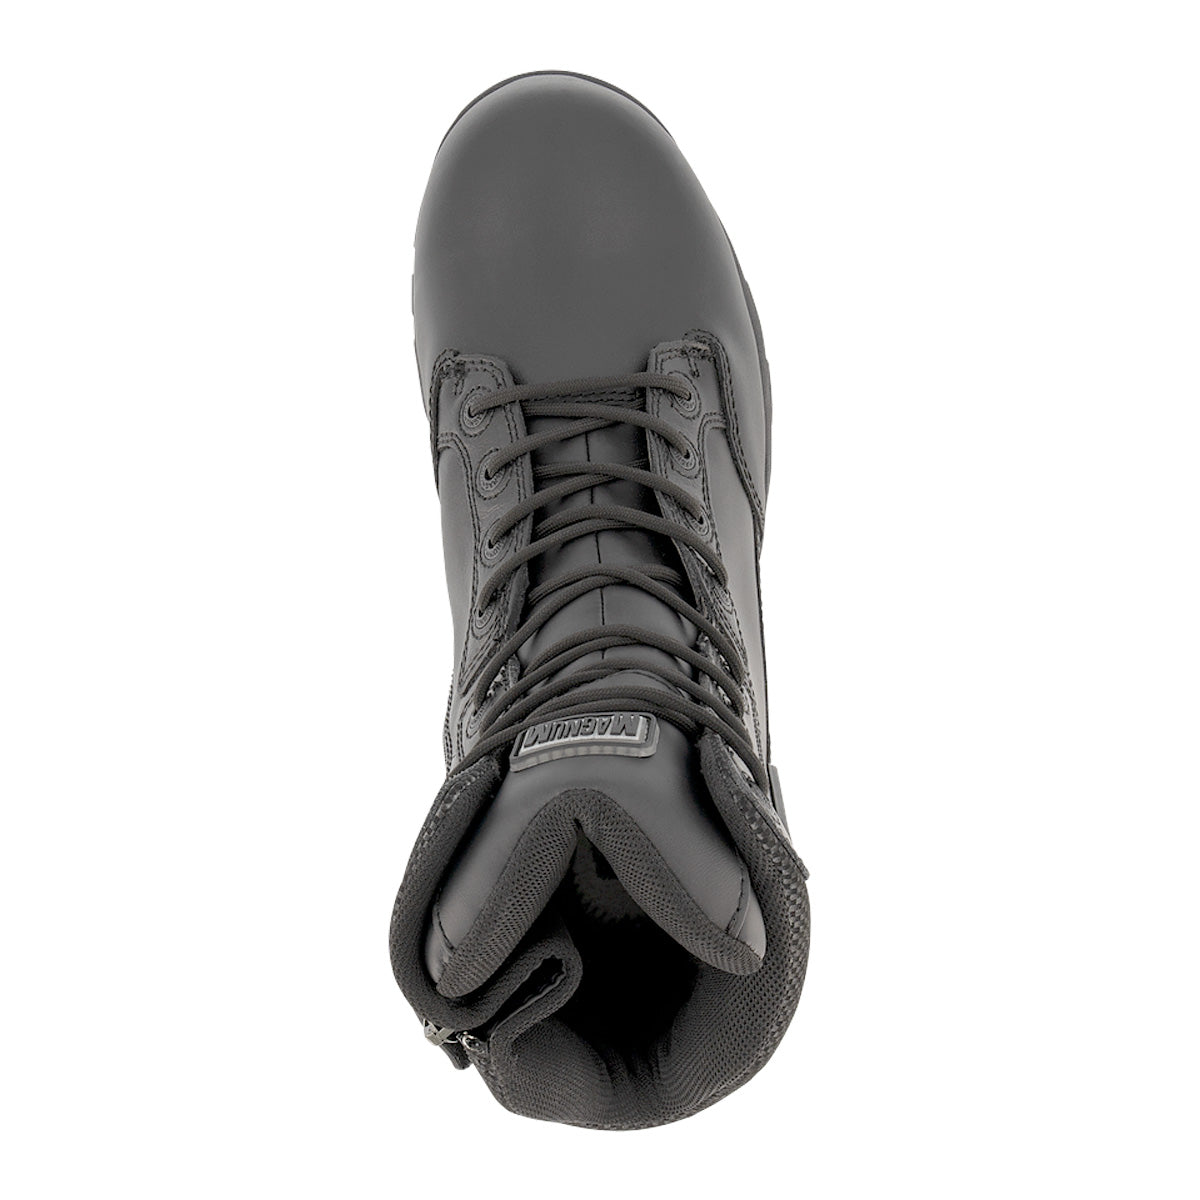 Magnum Strike Force 8.0 Leather Side-Zip Waterproof Boot Black Footwear Magnum Footwear Tactical Gear Supplier Tactical Distributors Australia